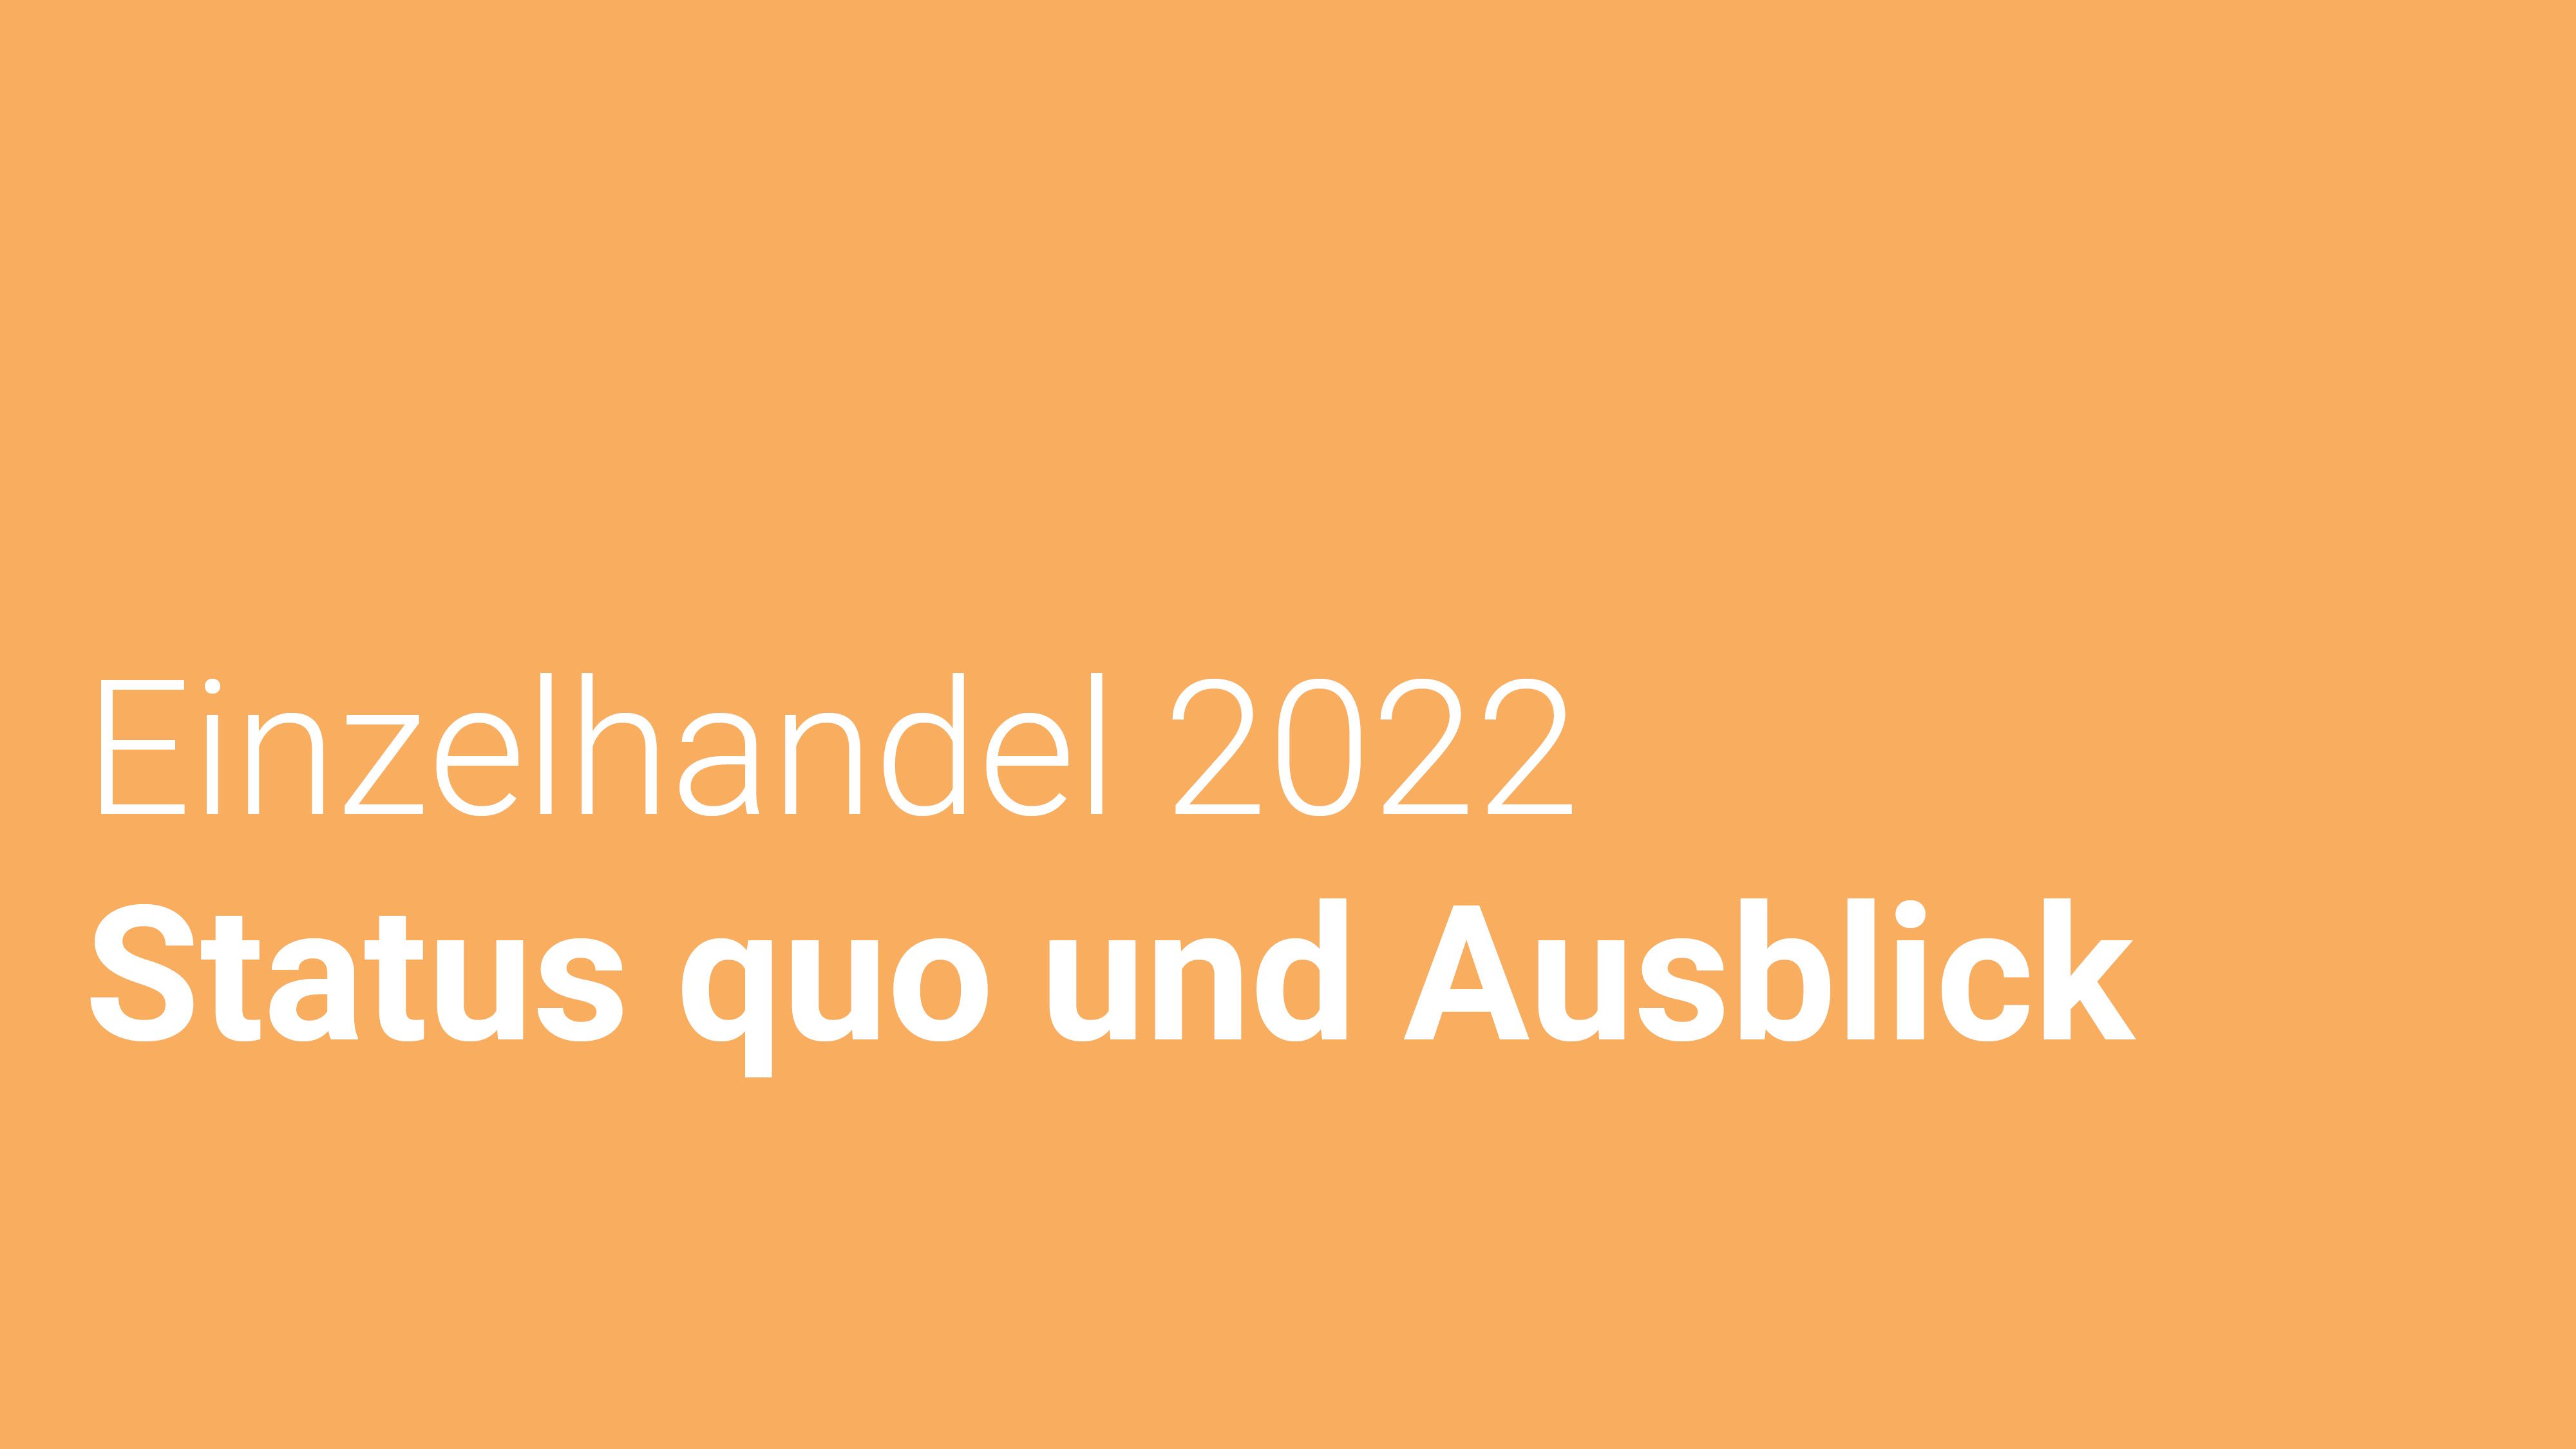 Der bayerische Einzelhandel 2022 – Status quo und Ausblick